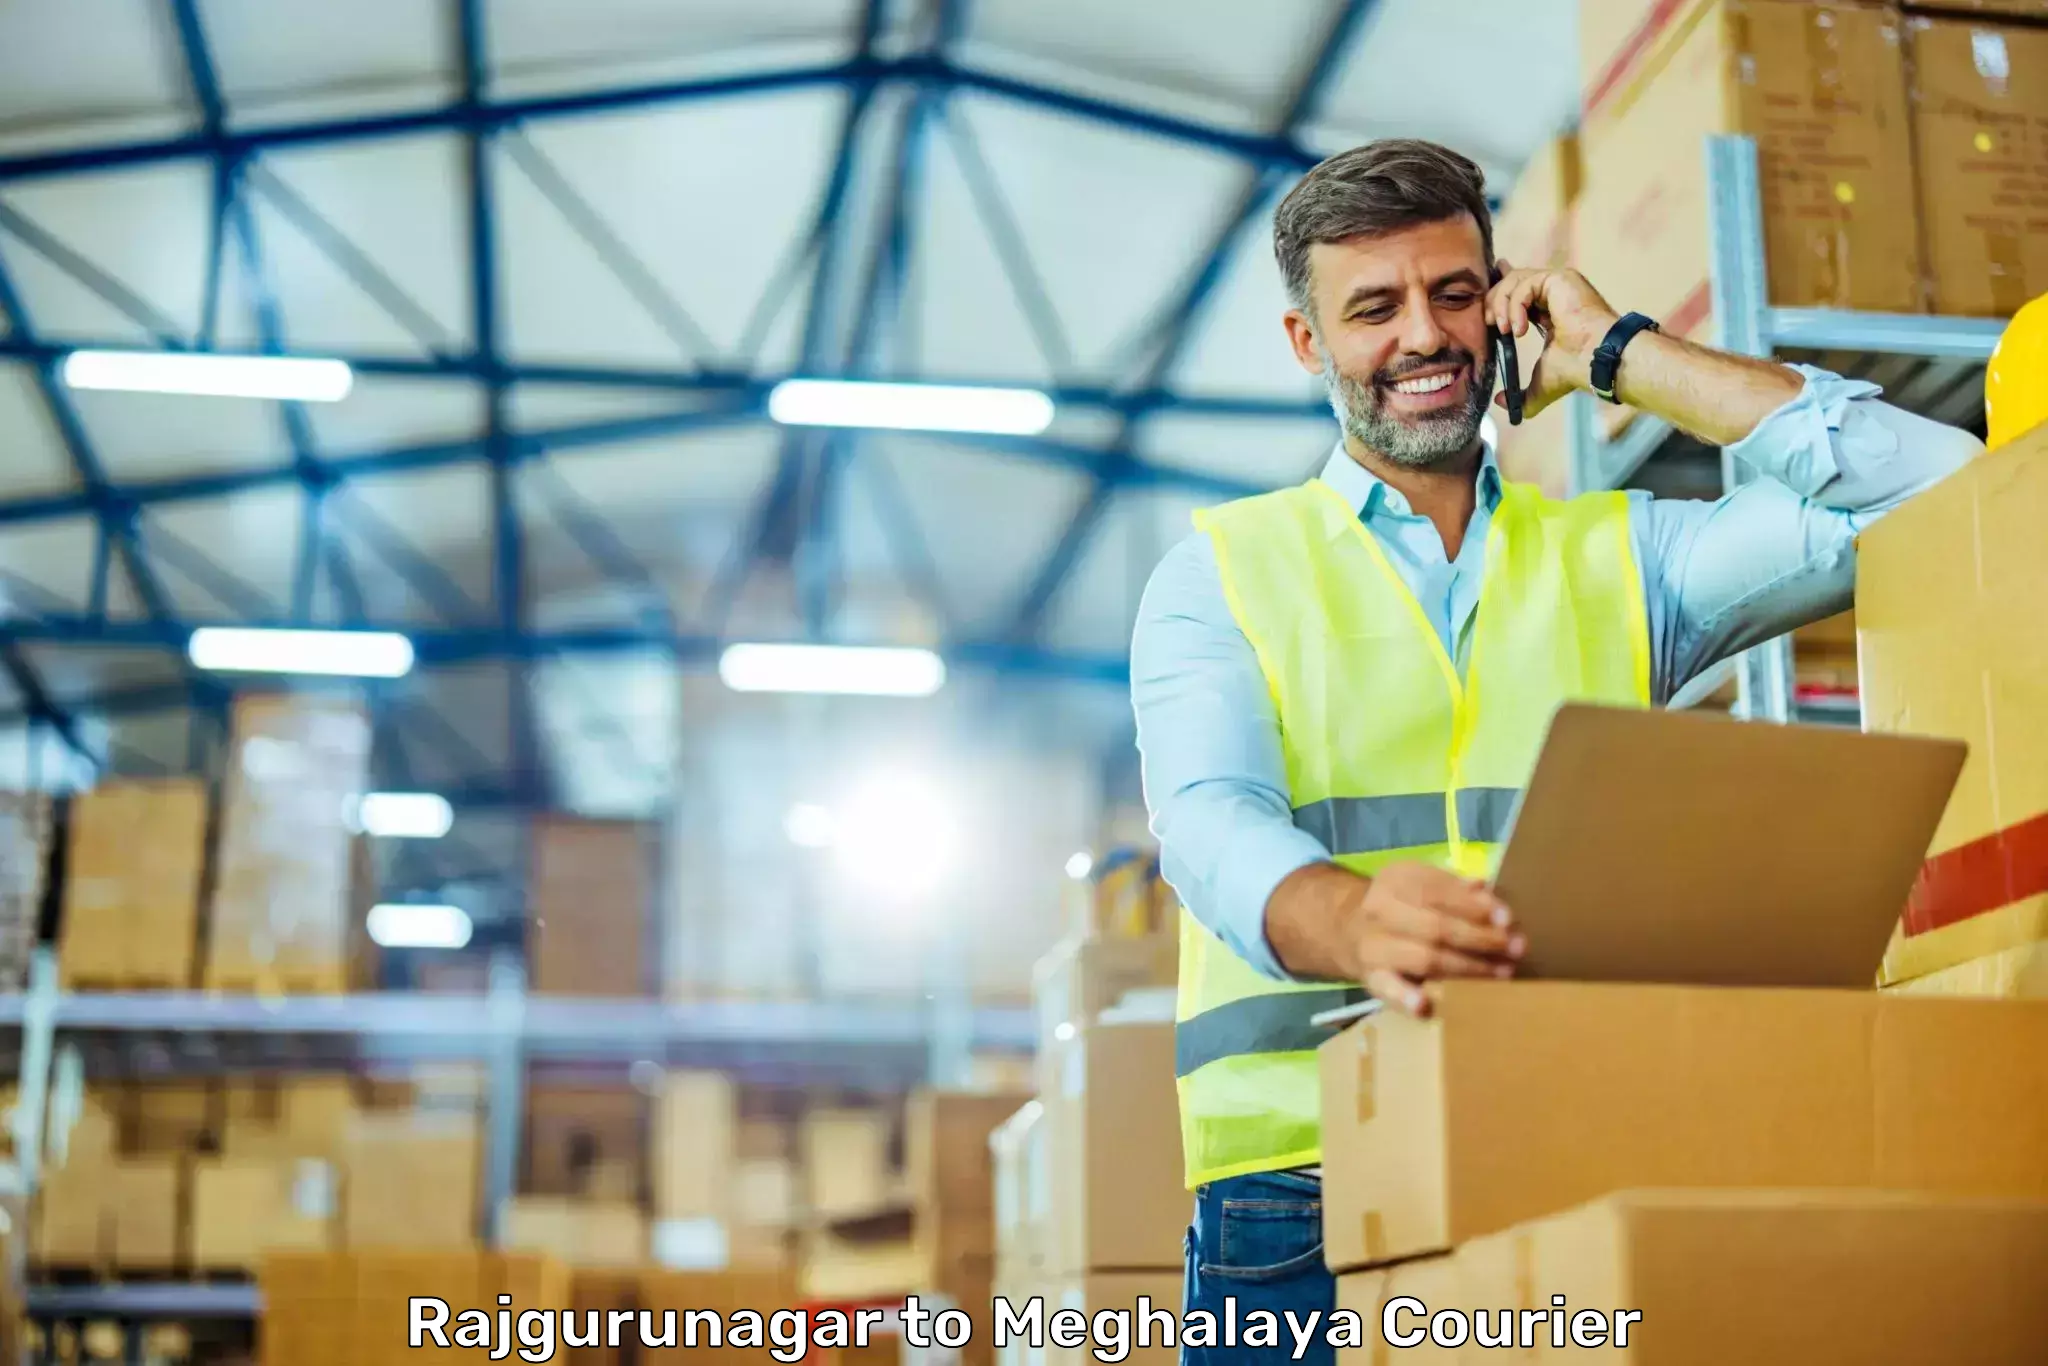 Professional courier handling Rajgurunagar to Meghalaya